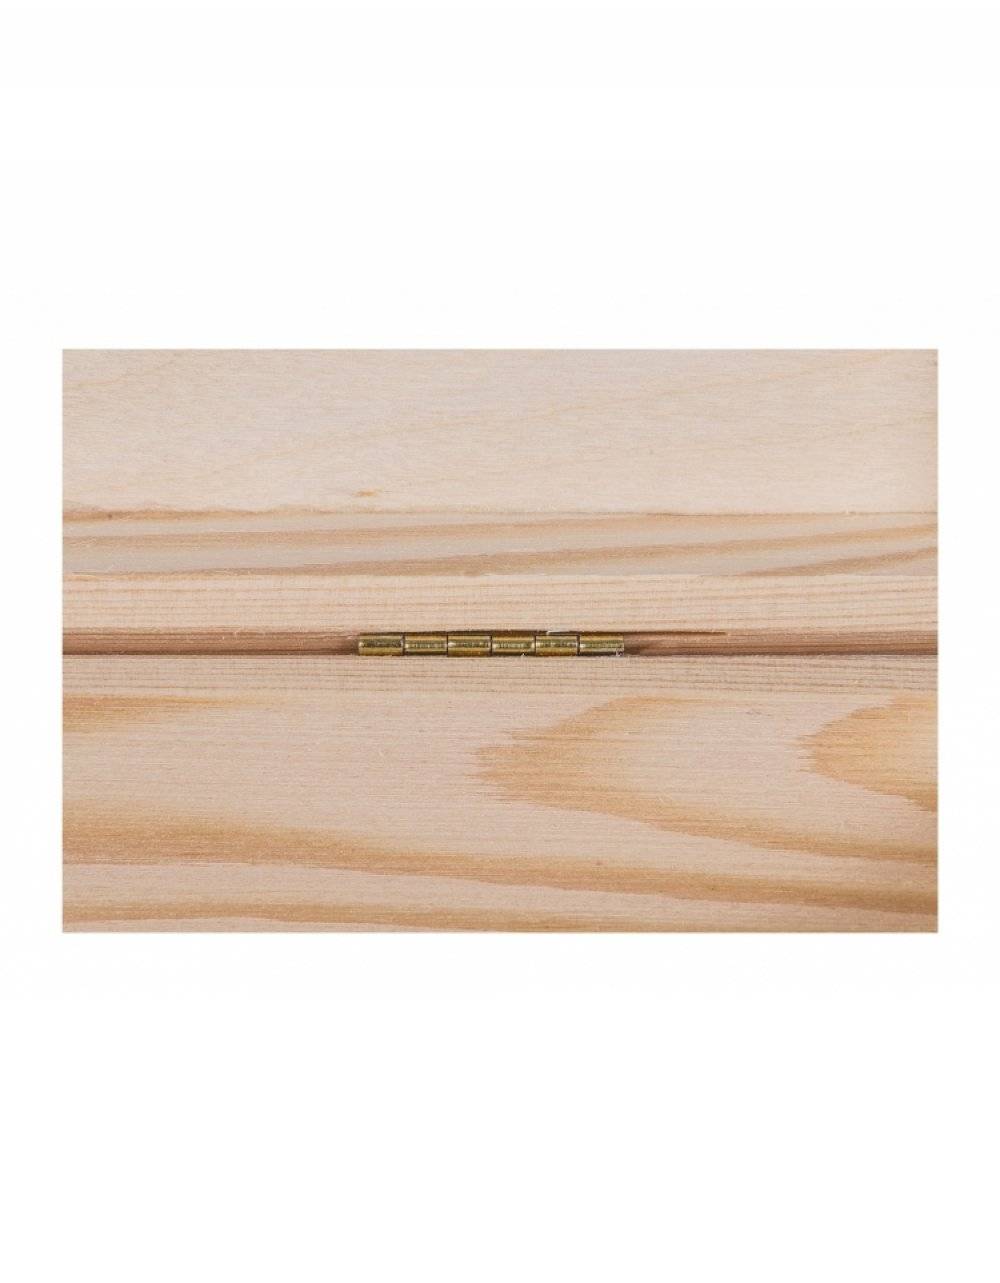 Přírodní dřevěná krabička 20x20x13 cm